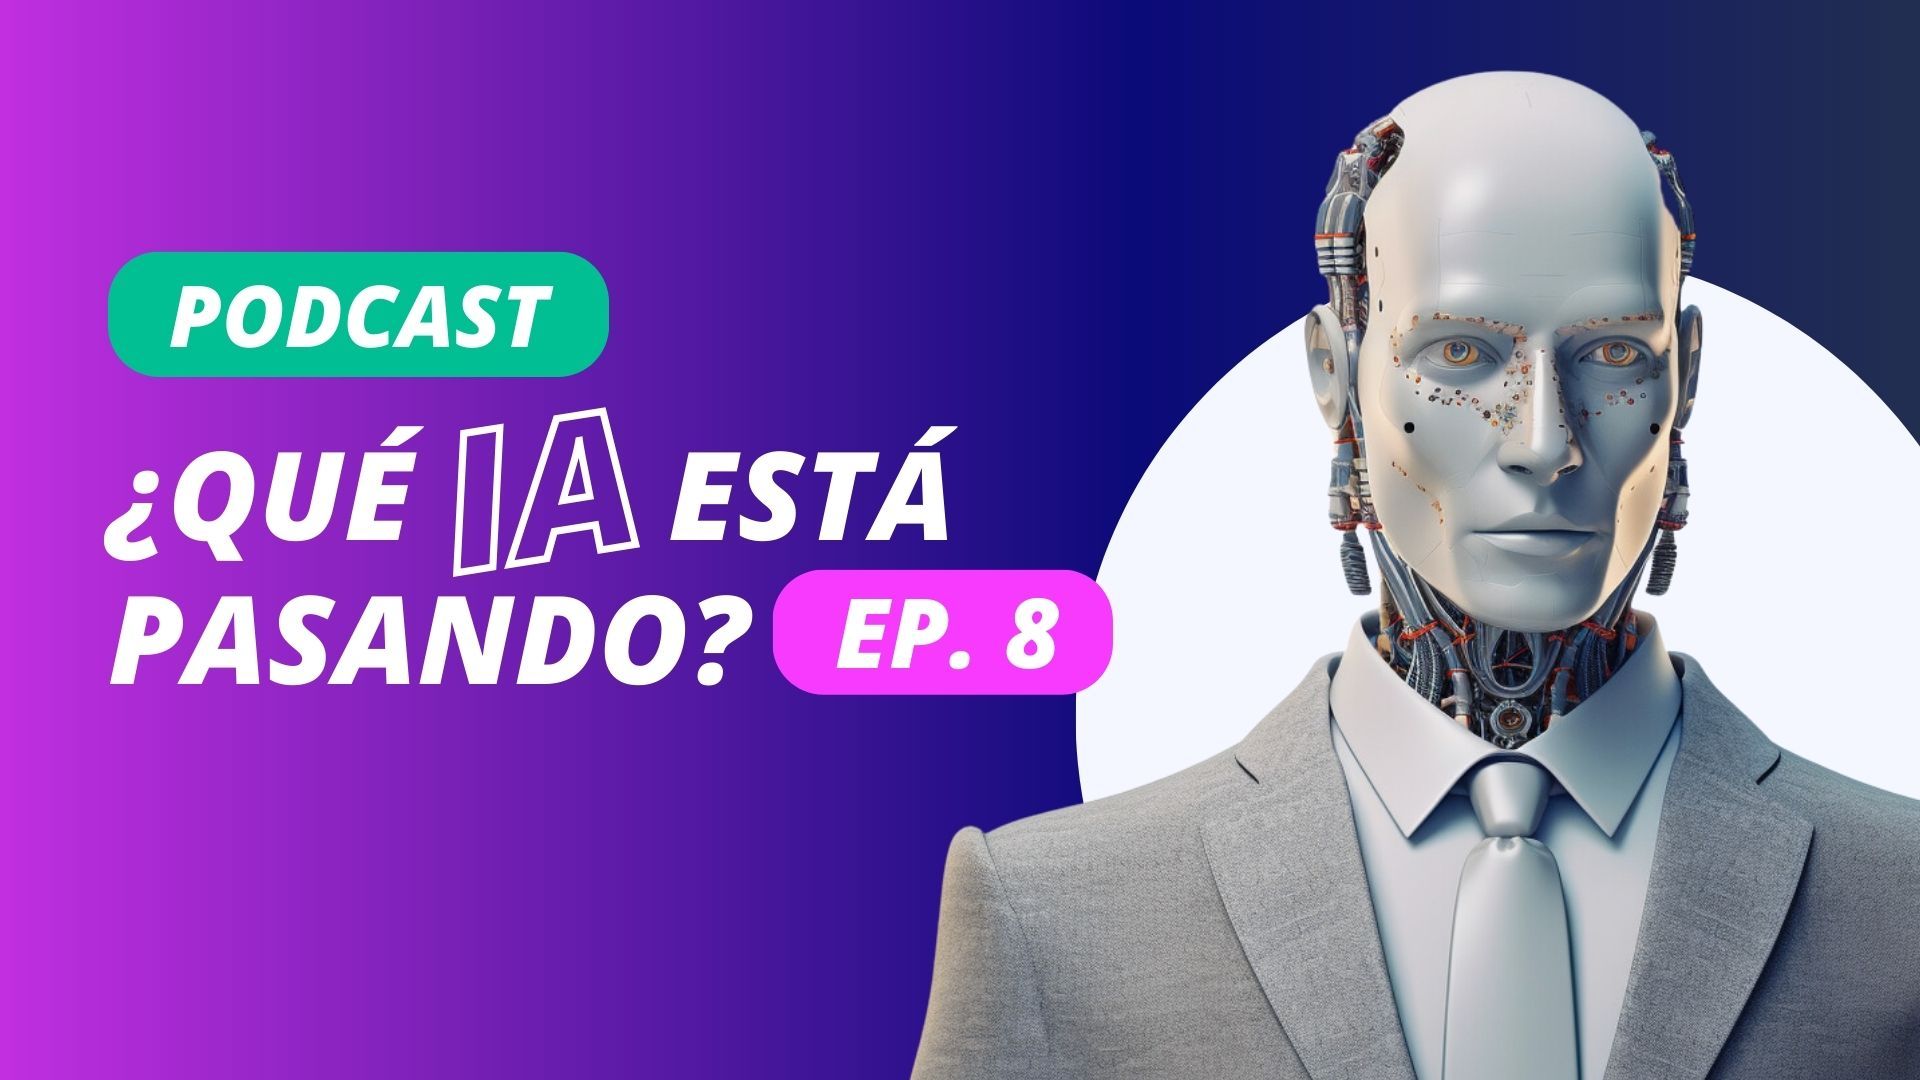 Escucha nuestro nuevo Podcast: ¿Qué IA está pasando? Ep 8.